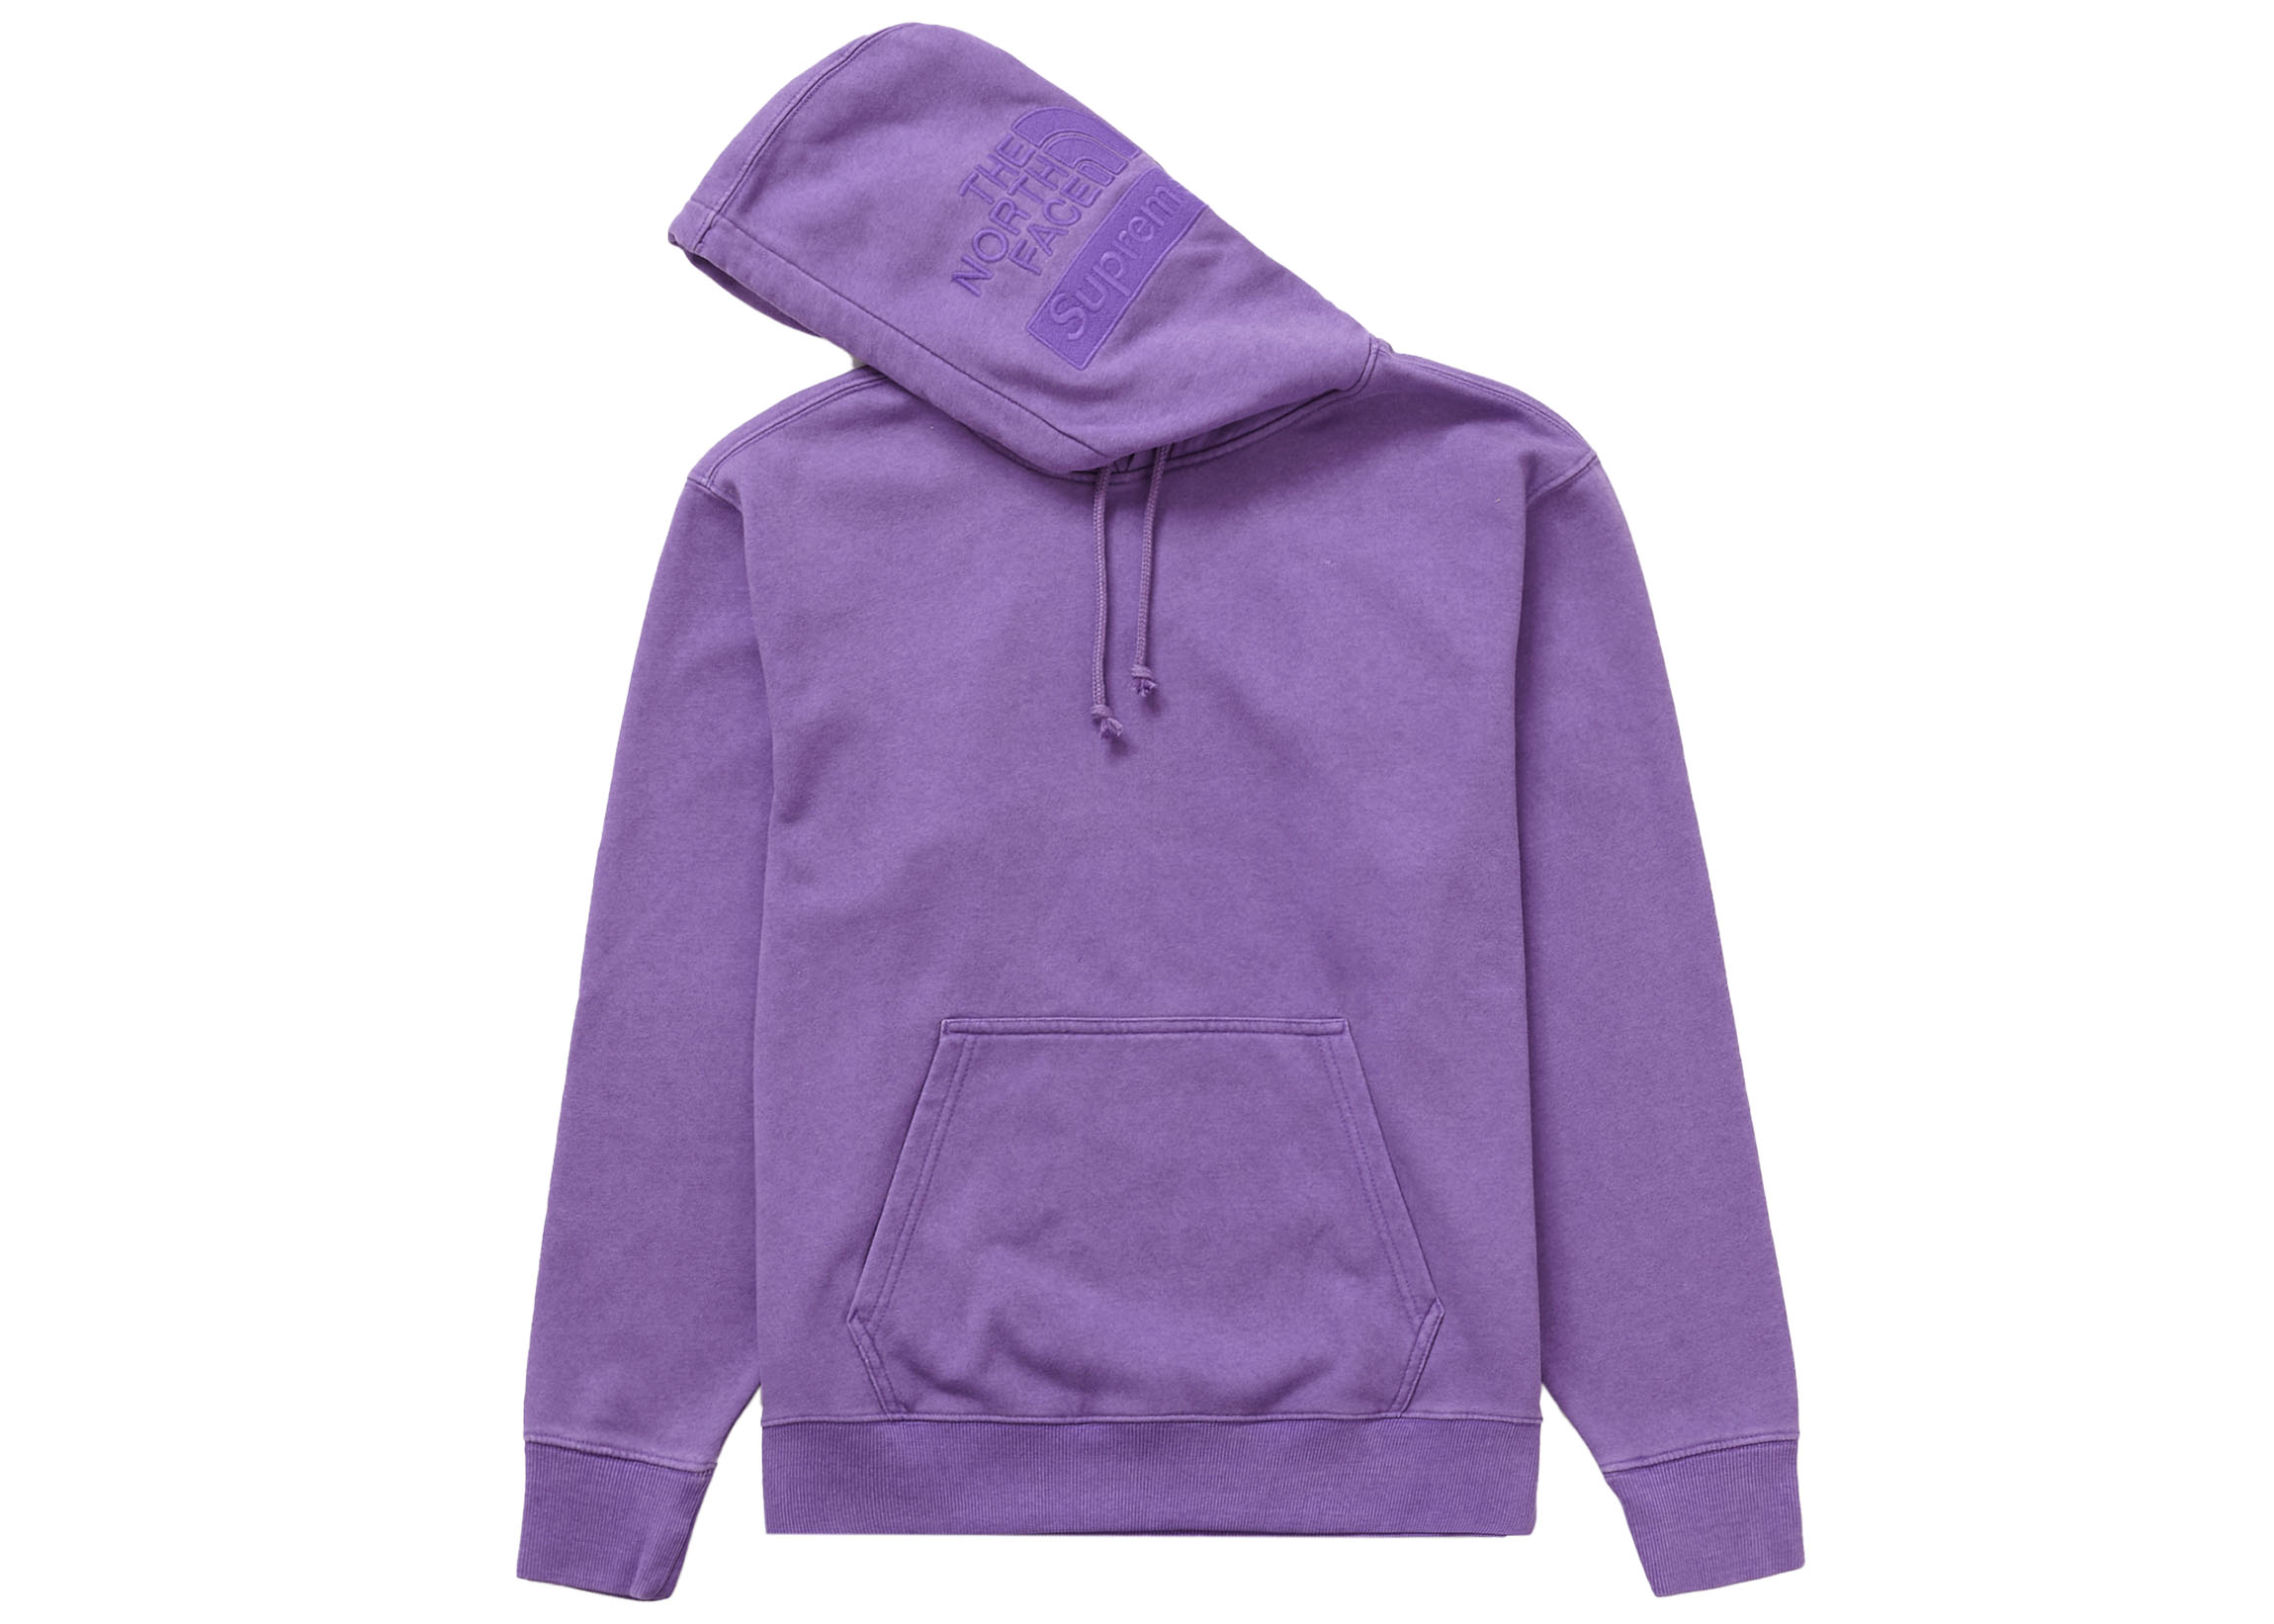 Pigment Printed Hooded Sweatshirt XL